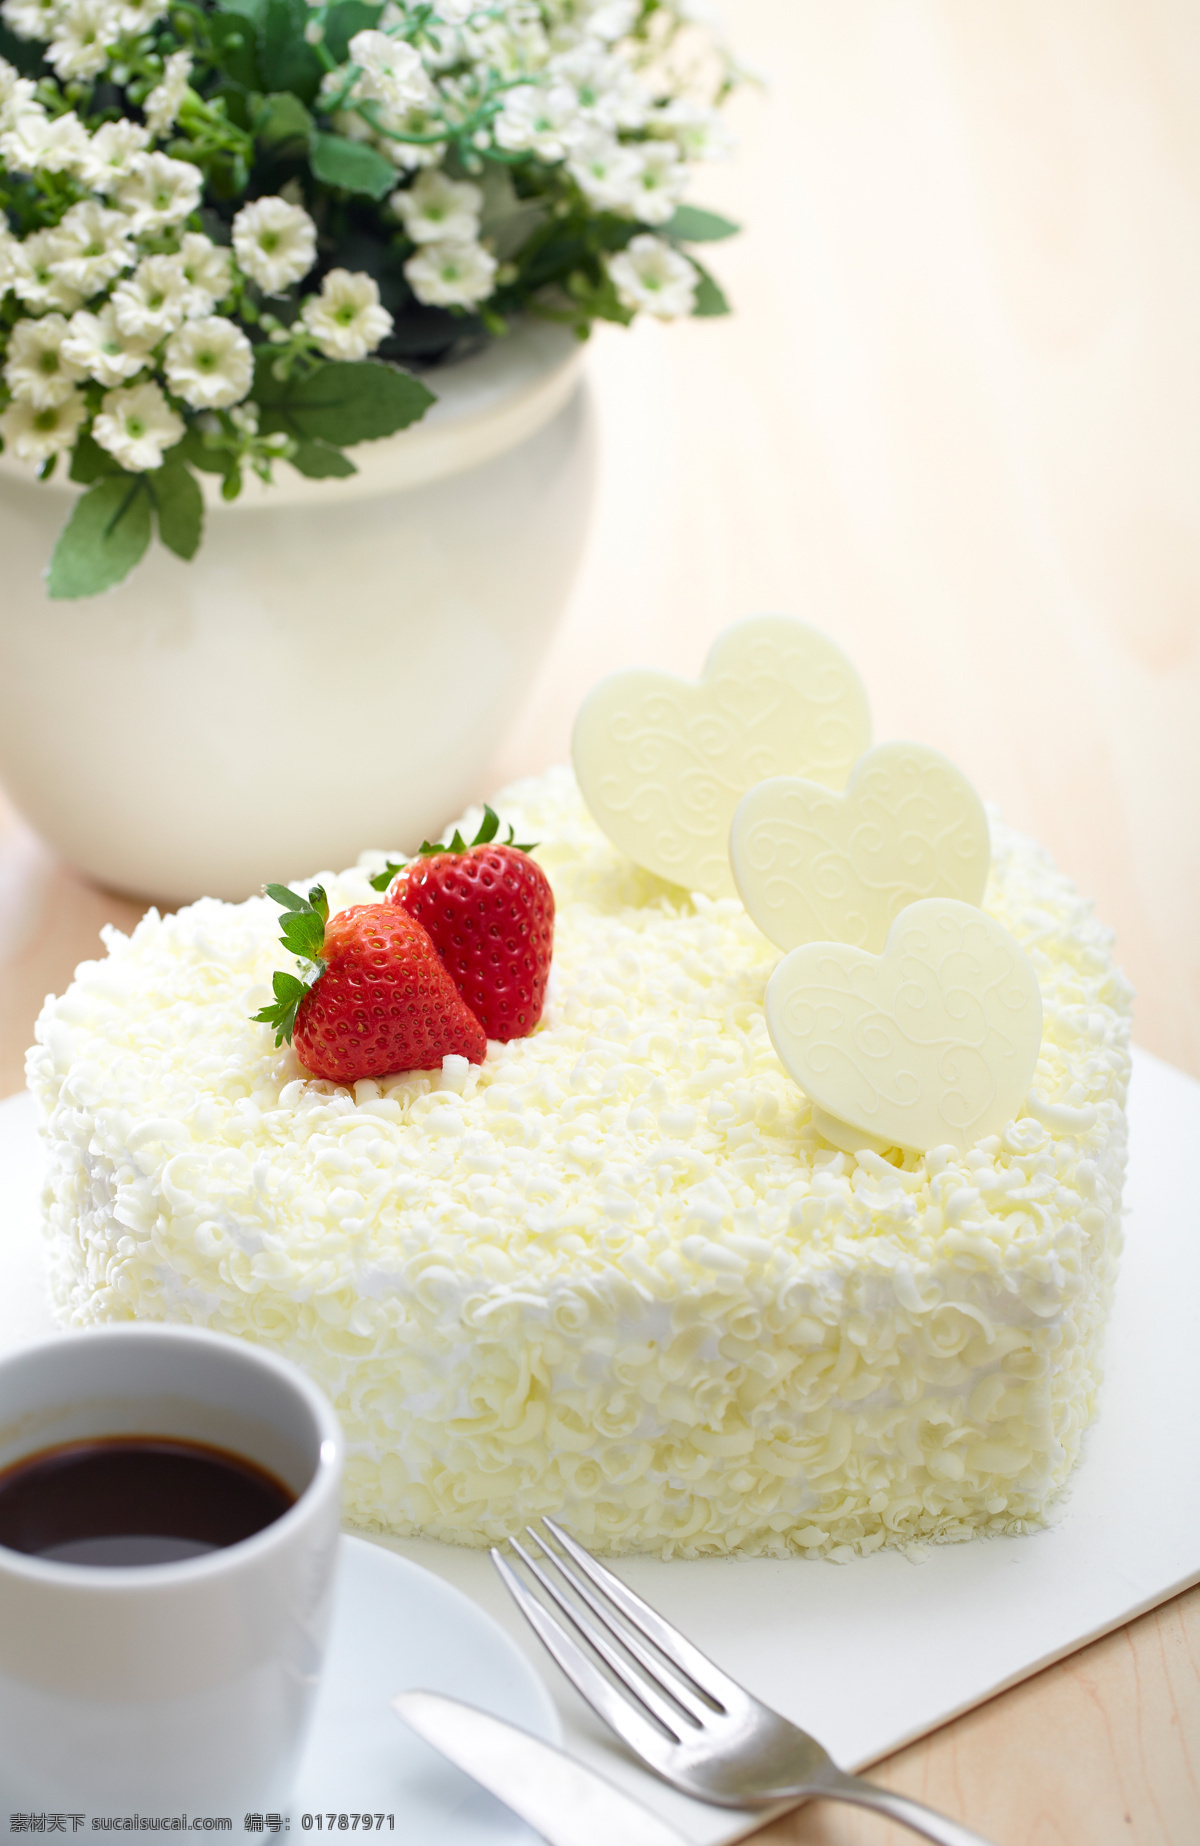 慕斯蛋糕 美食素材 精致蛋糕 鲜花蛋糕 网红蛋糕 烘焙 私坊蛋糕 蛋糕素材 生日蛋糕 海报 创意蛋糕 定制 定制蛋糕 餐饮美食